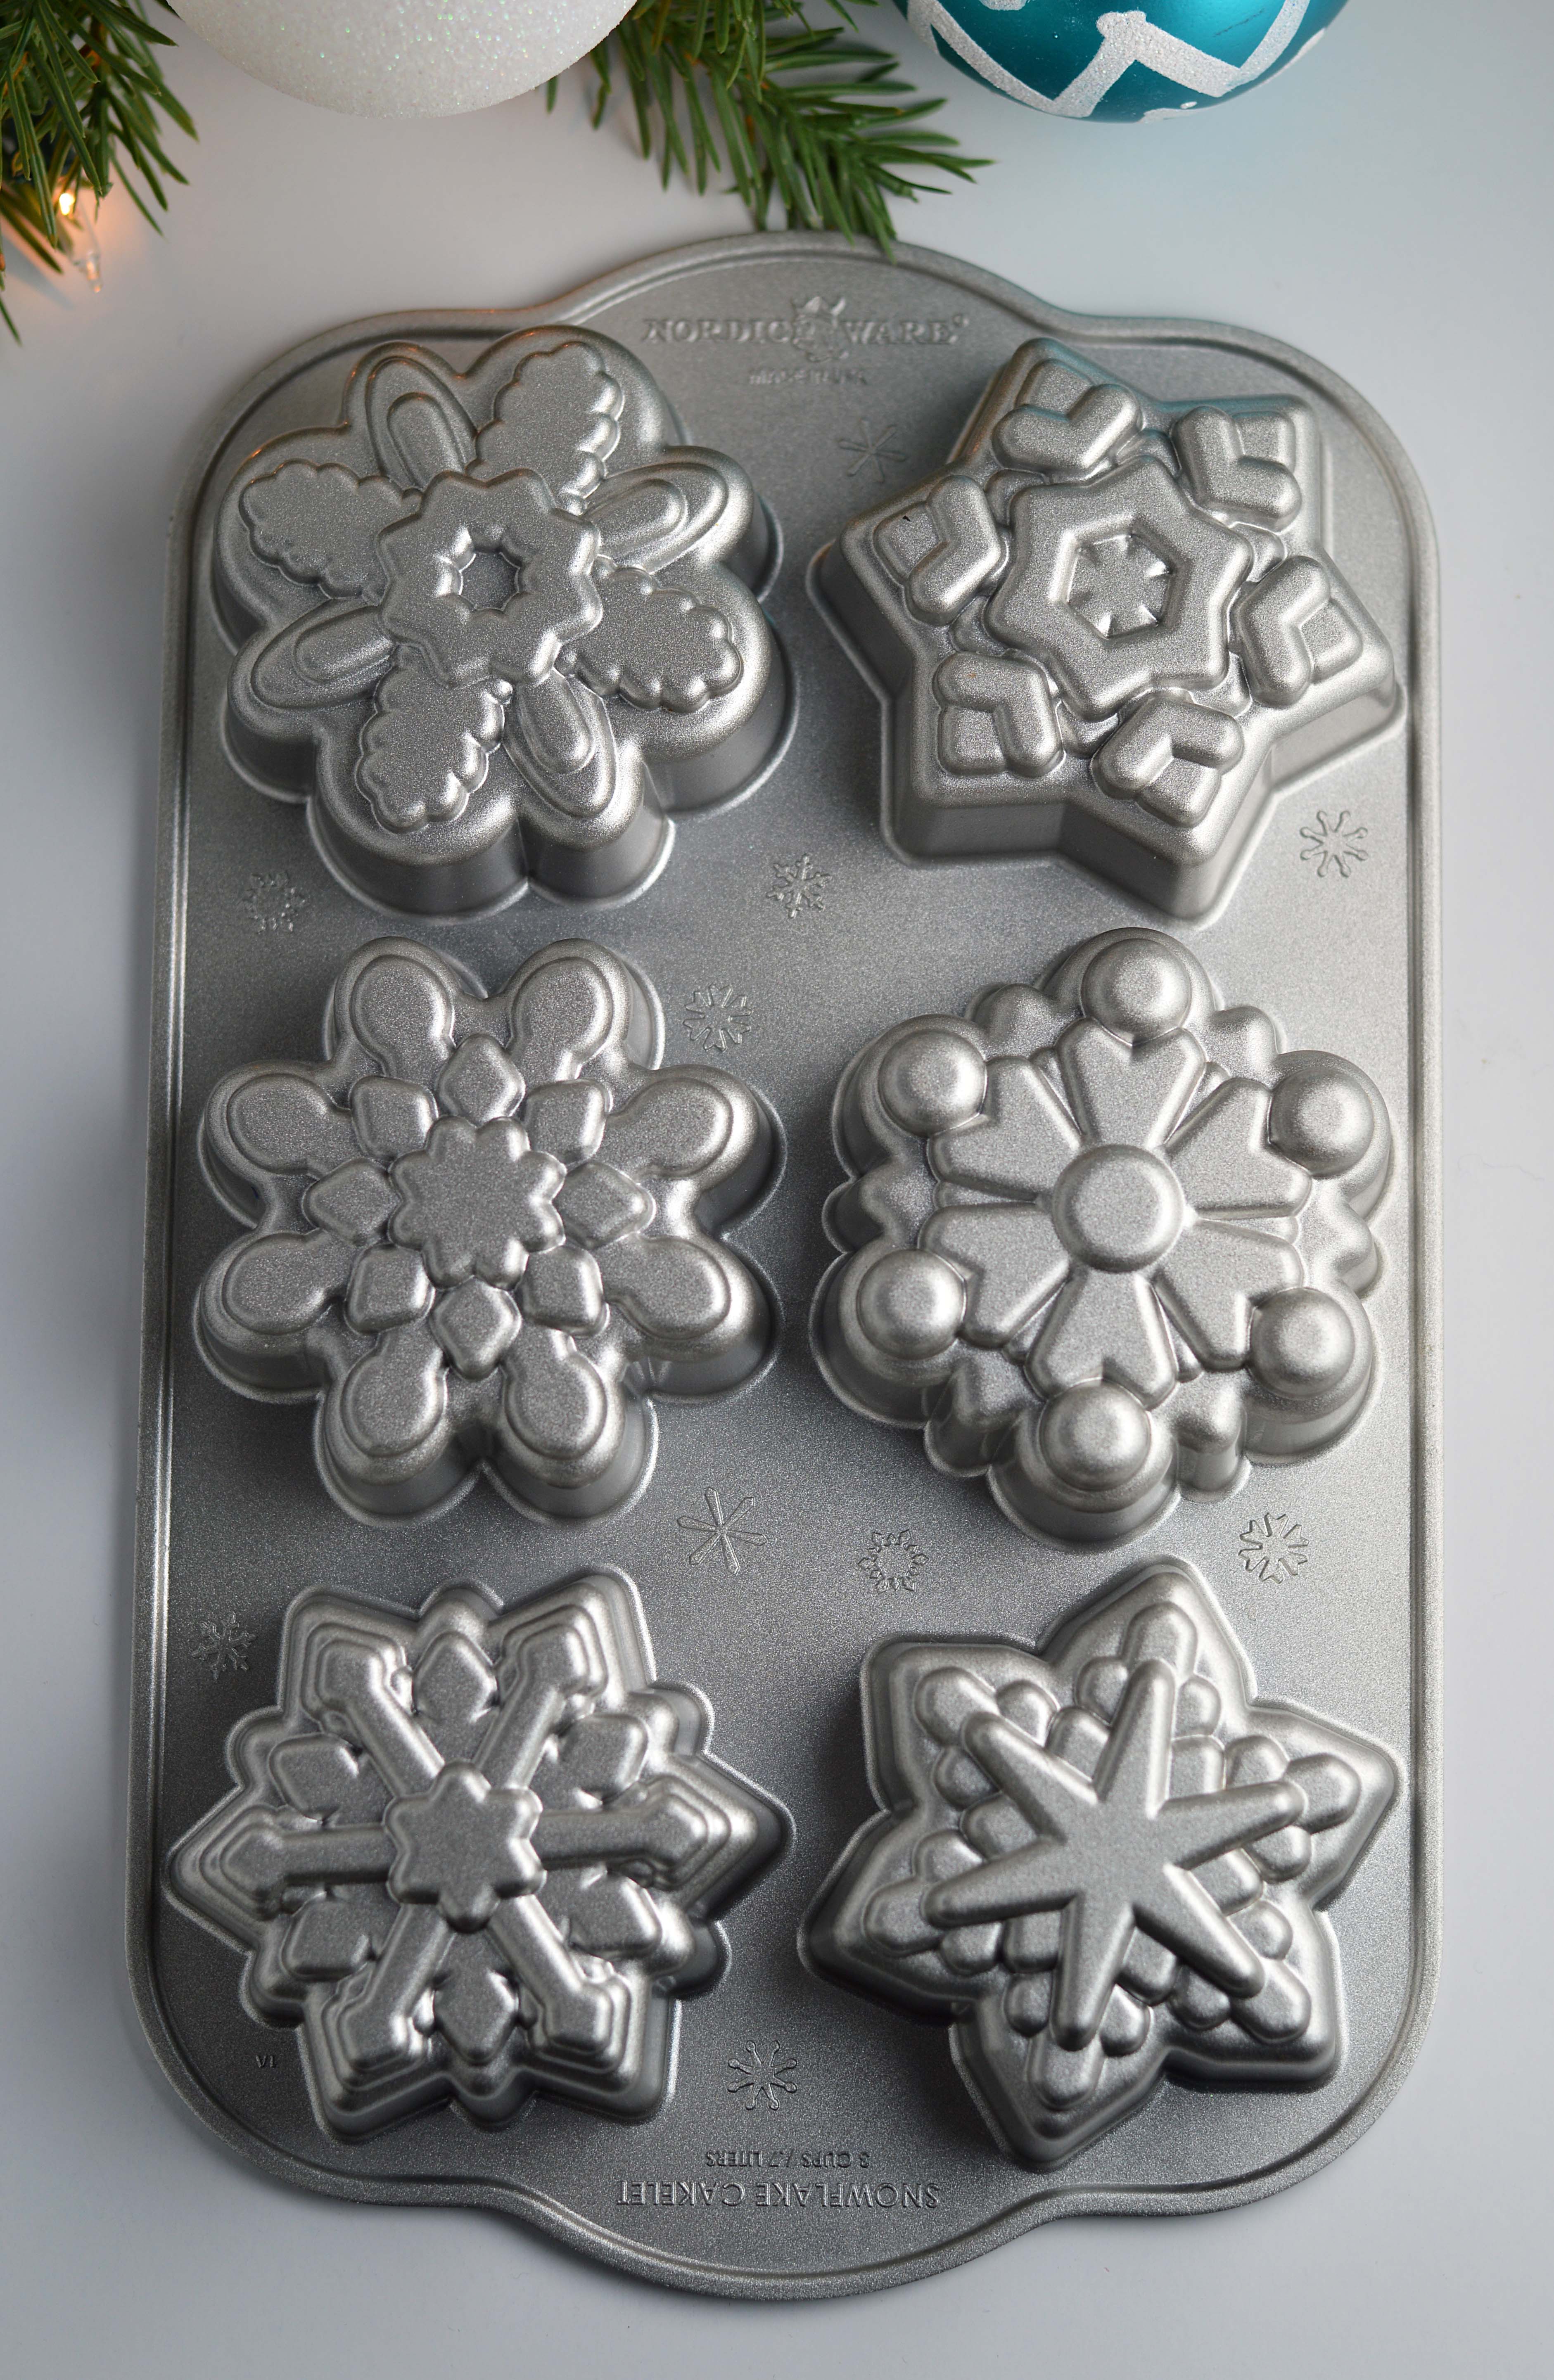 Nordic Ware Cakelet Pan, Frozen Snowflake